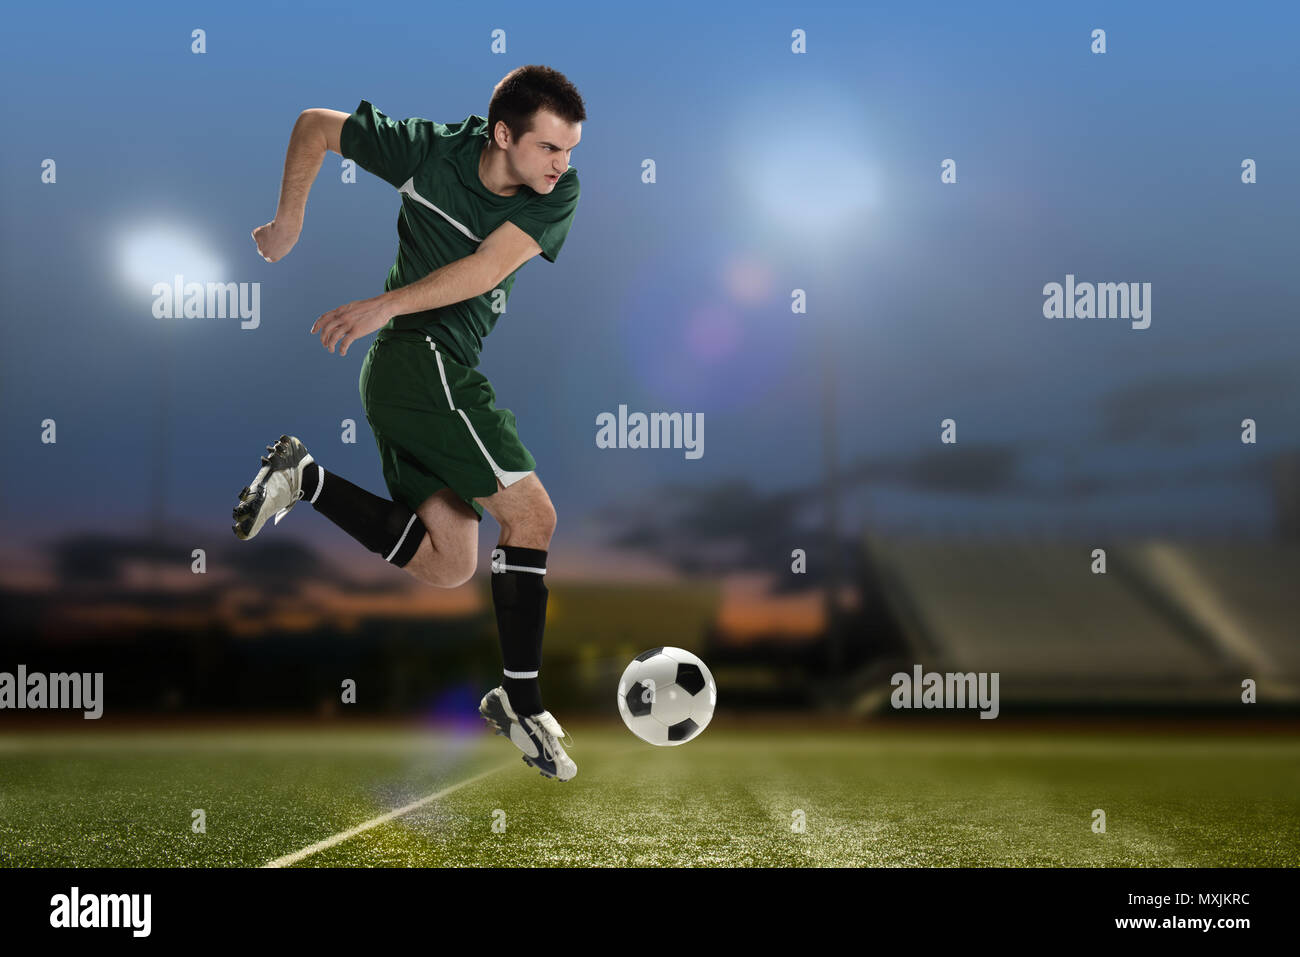 Soccer Player Kicking the ball à l'intérieur d'un stade de football de nuit Banque D'Images